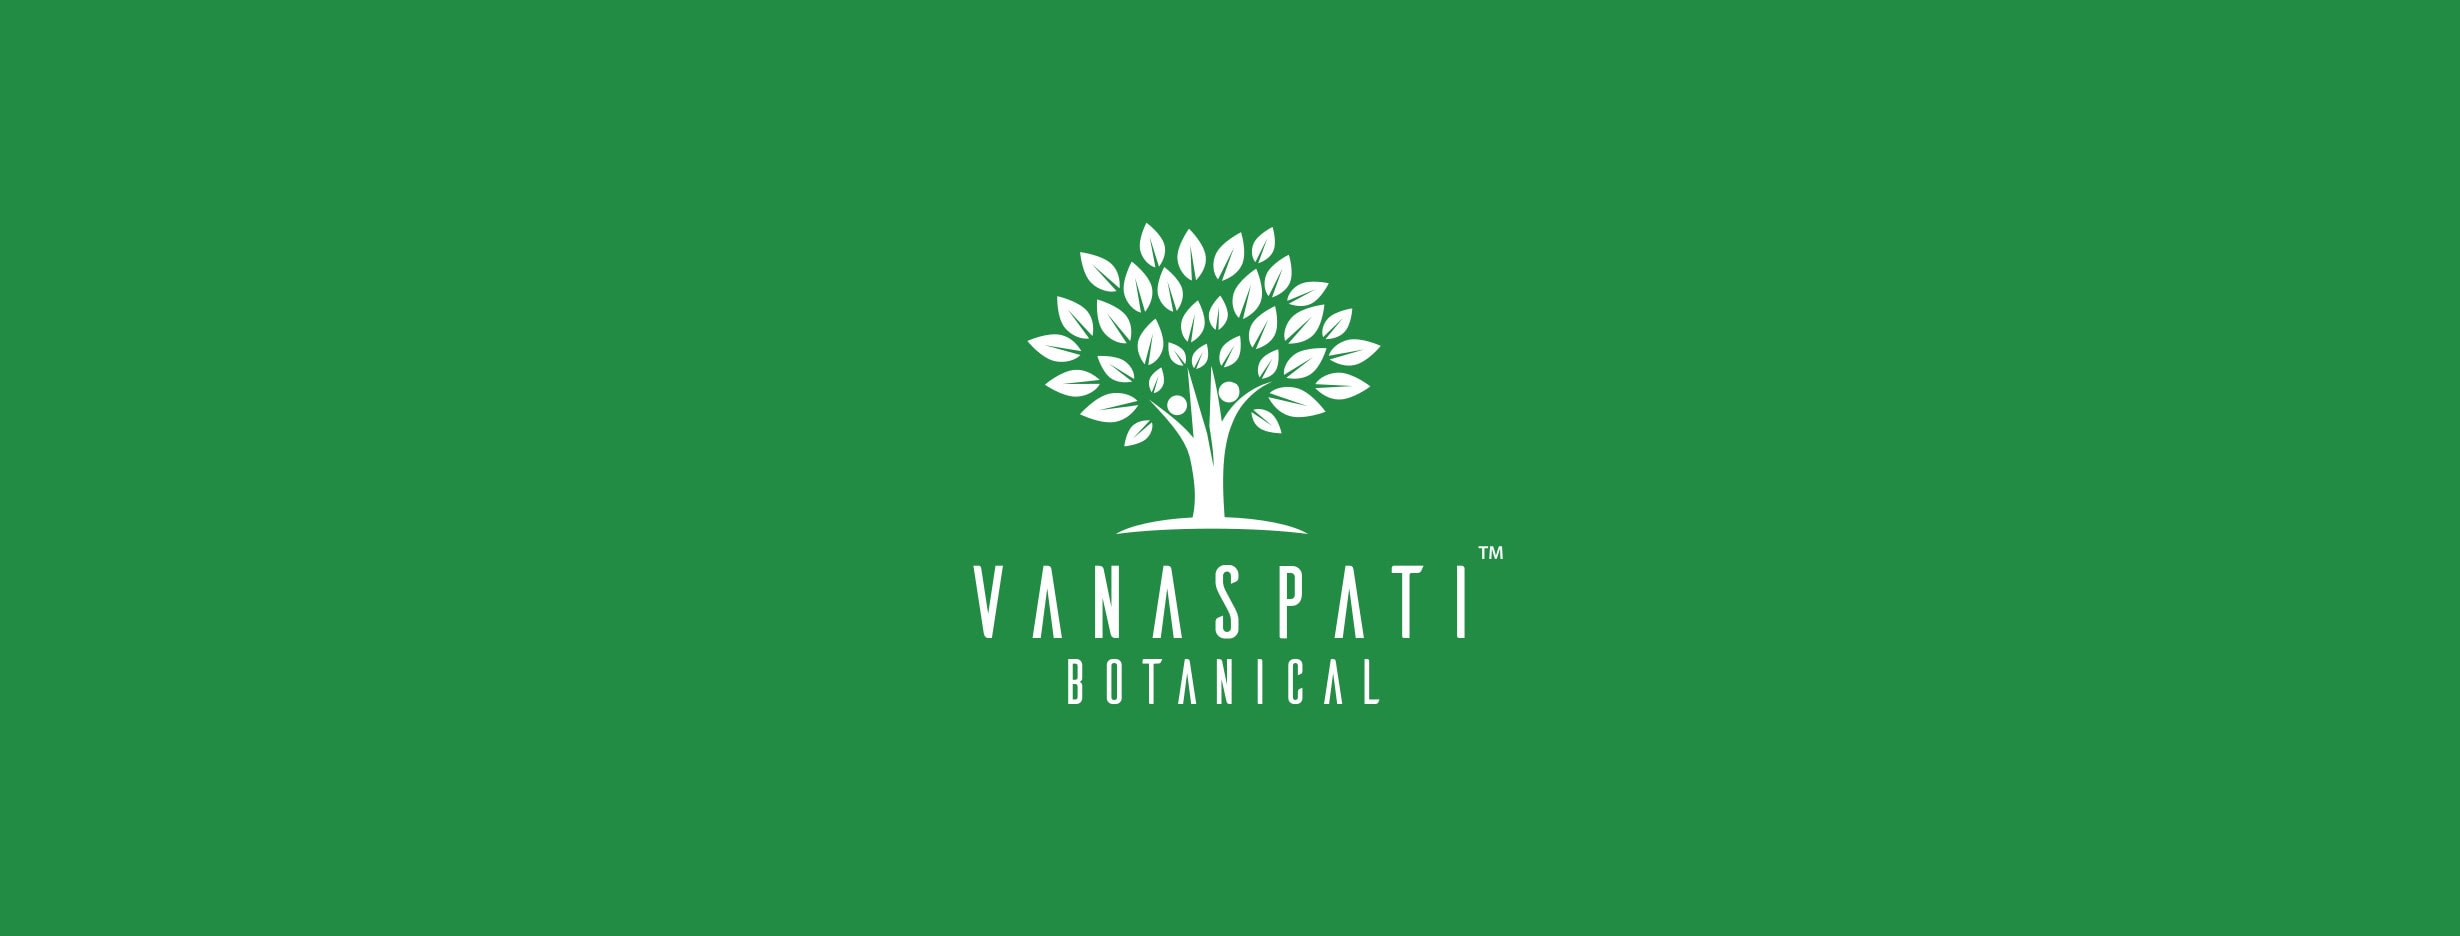 Vanaspati Botanical